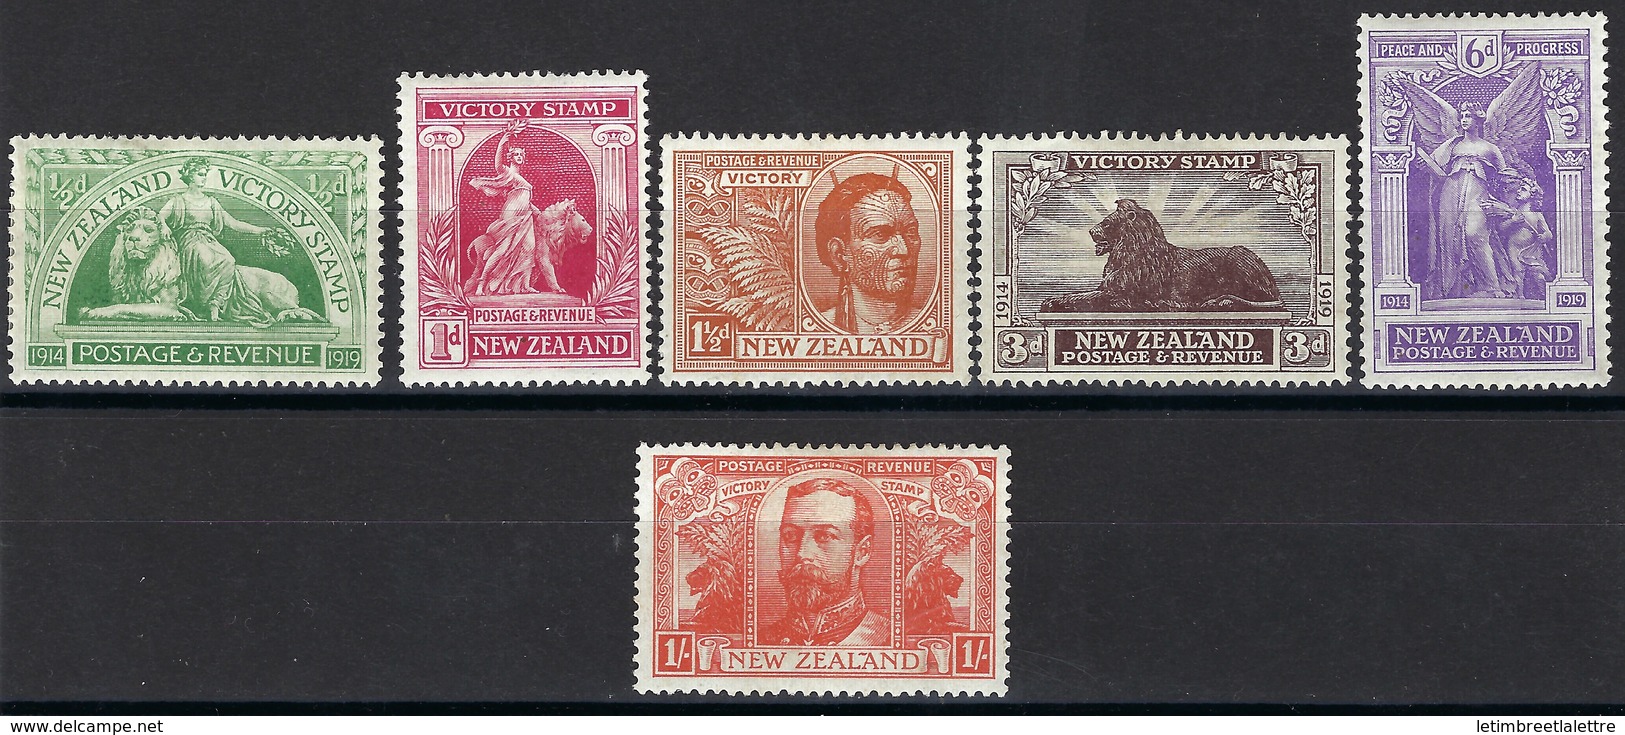 ⭐ Nouvelle Zélande - Dominion - N° 169 à 174 * - Neuf Avec Charnière ⭐ - Unused Stamps